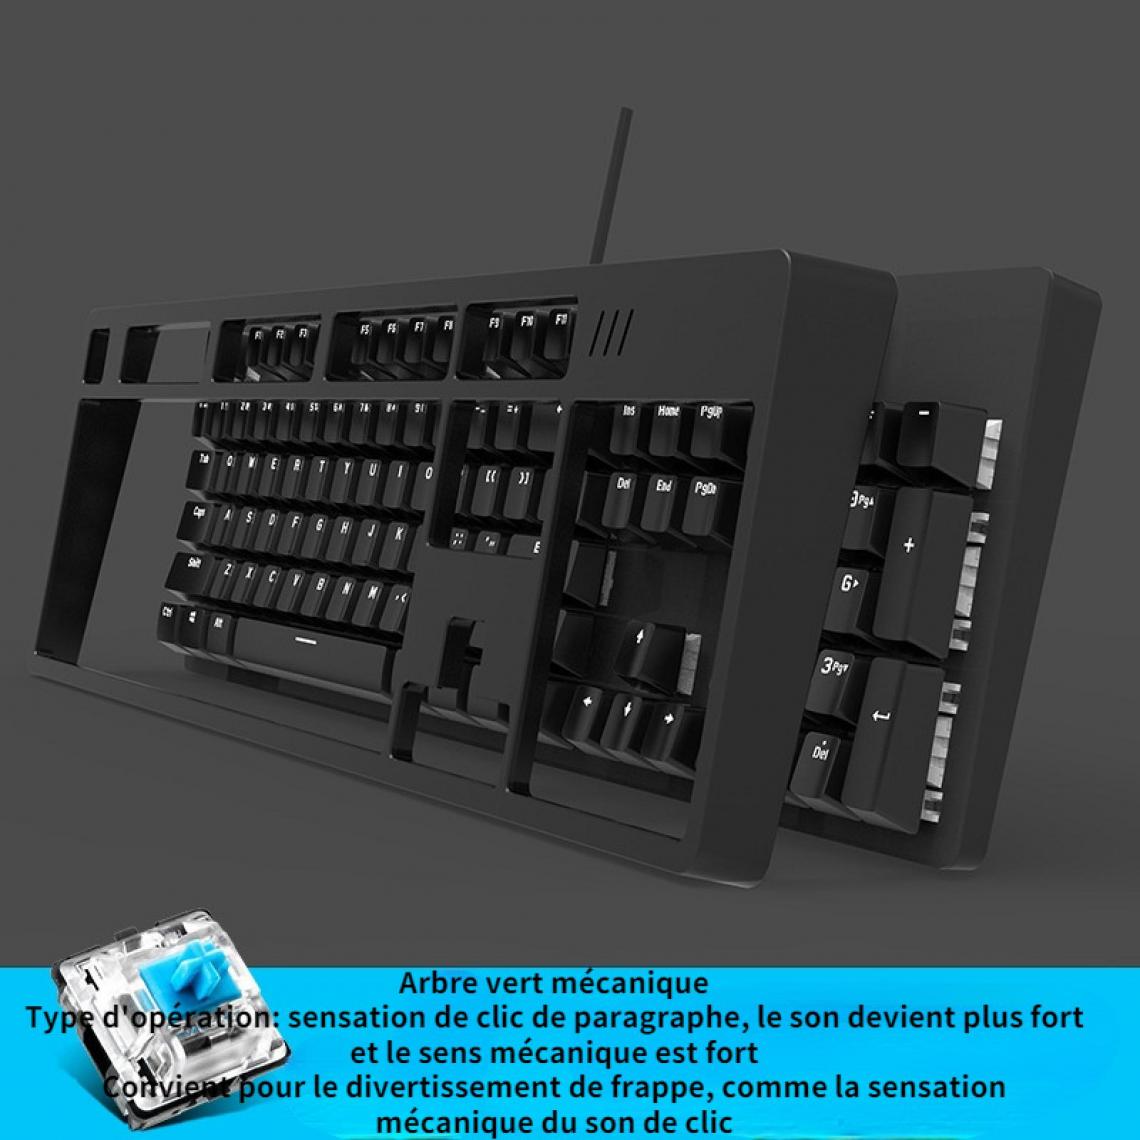 Gengyouyuan - Black Lord DKM150 clavier mécanique esports jeu vert axe noir thé noir axe ordinateur portable de bureau manger poulet clavier - Clavier